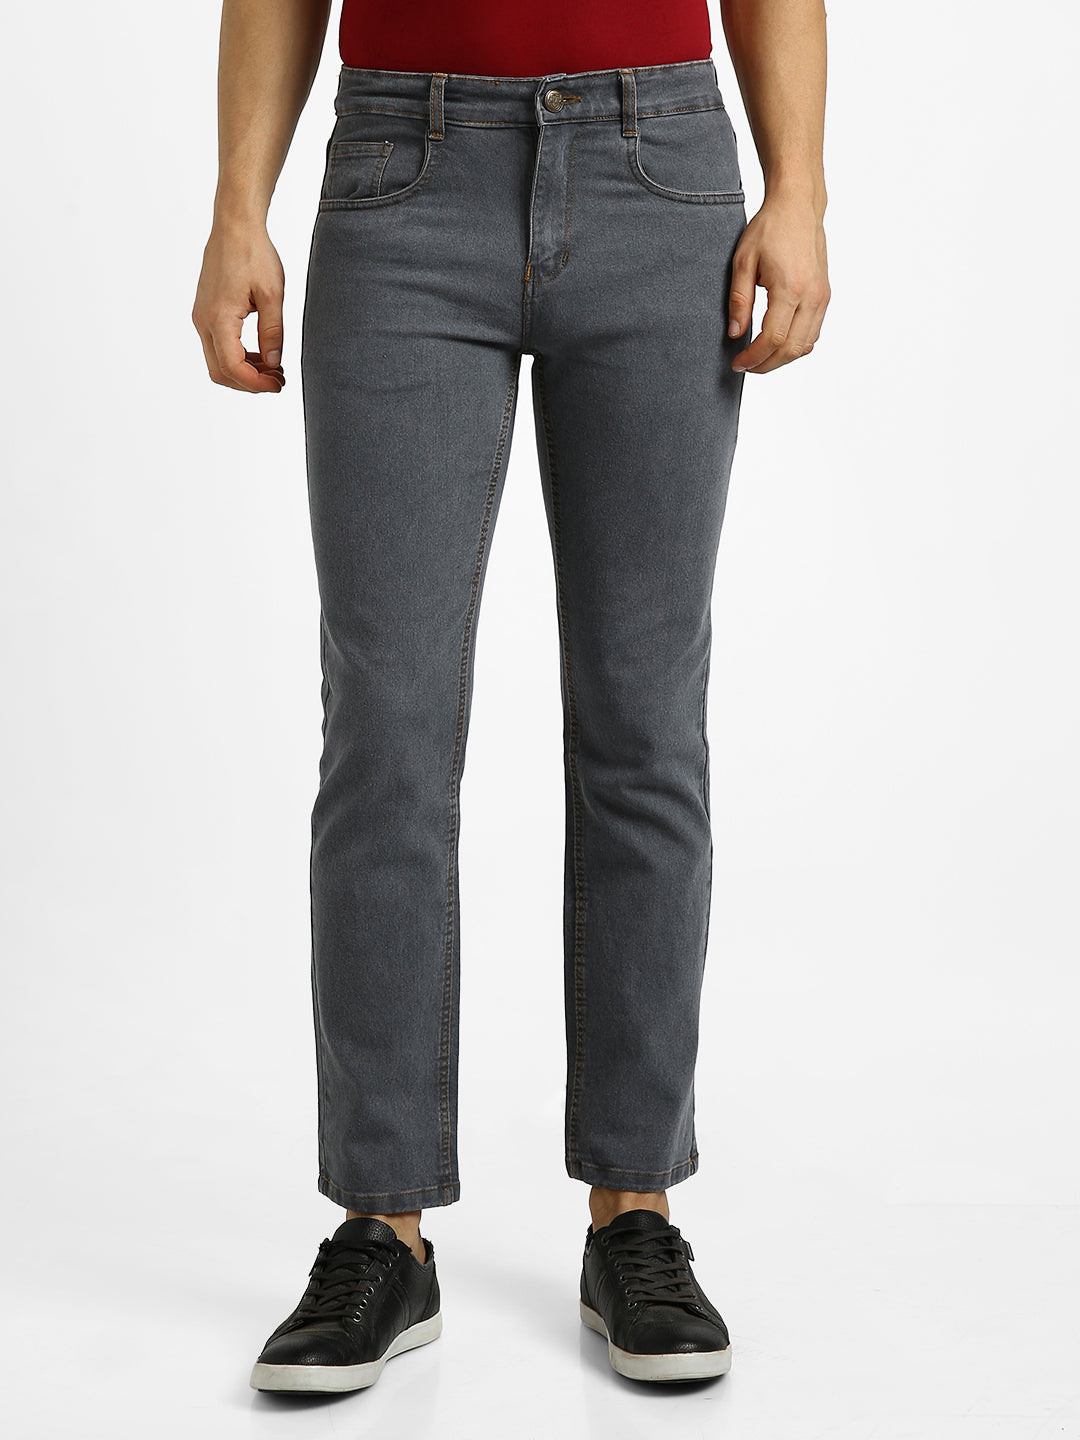 Men's Medium Grey Regular Fit Washed Jeans Stretchable